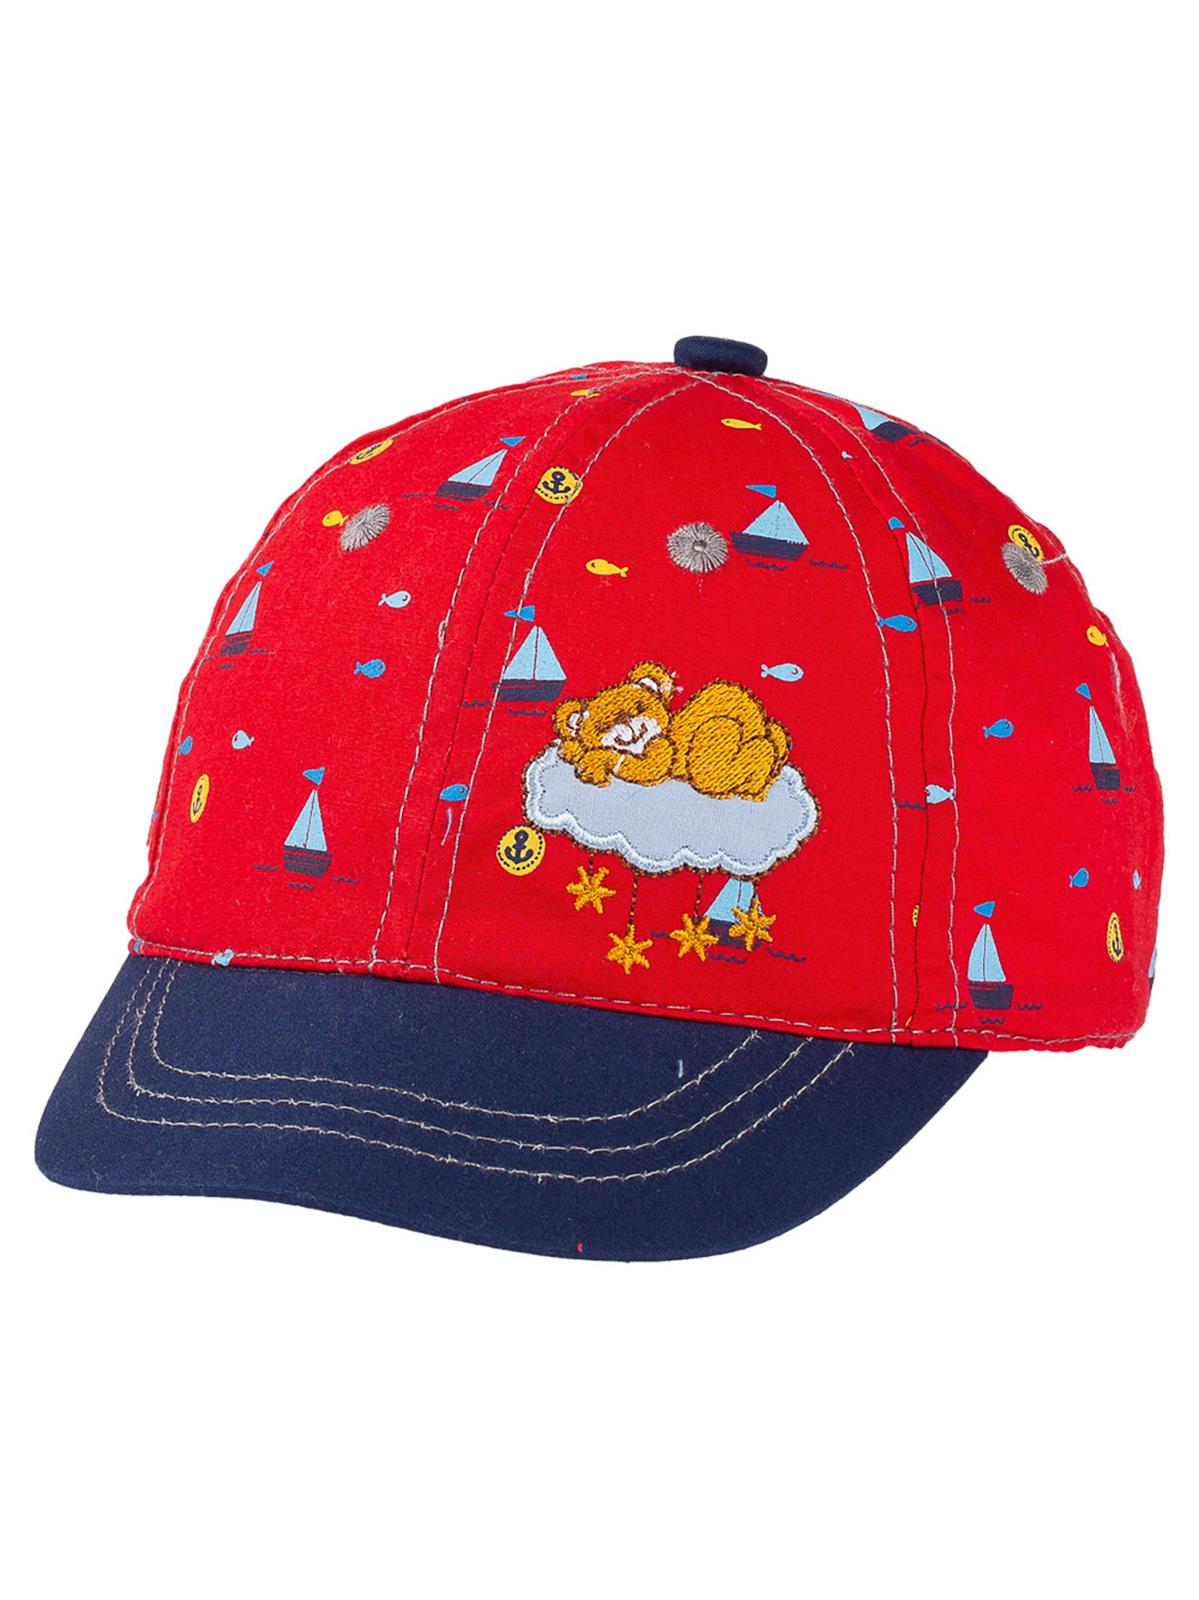 Kitti Erkek Bebek Kep Şapka 0-18 Ay Kırmızı